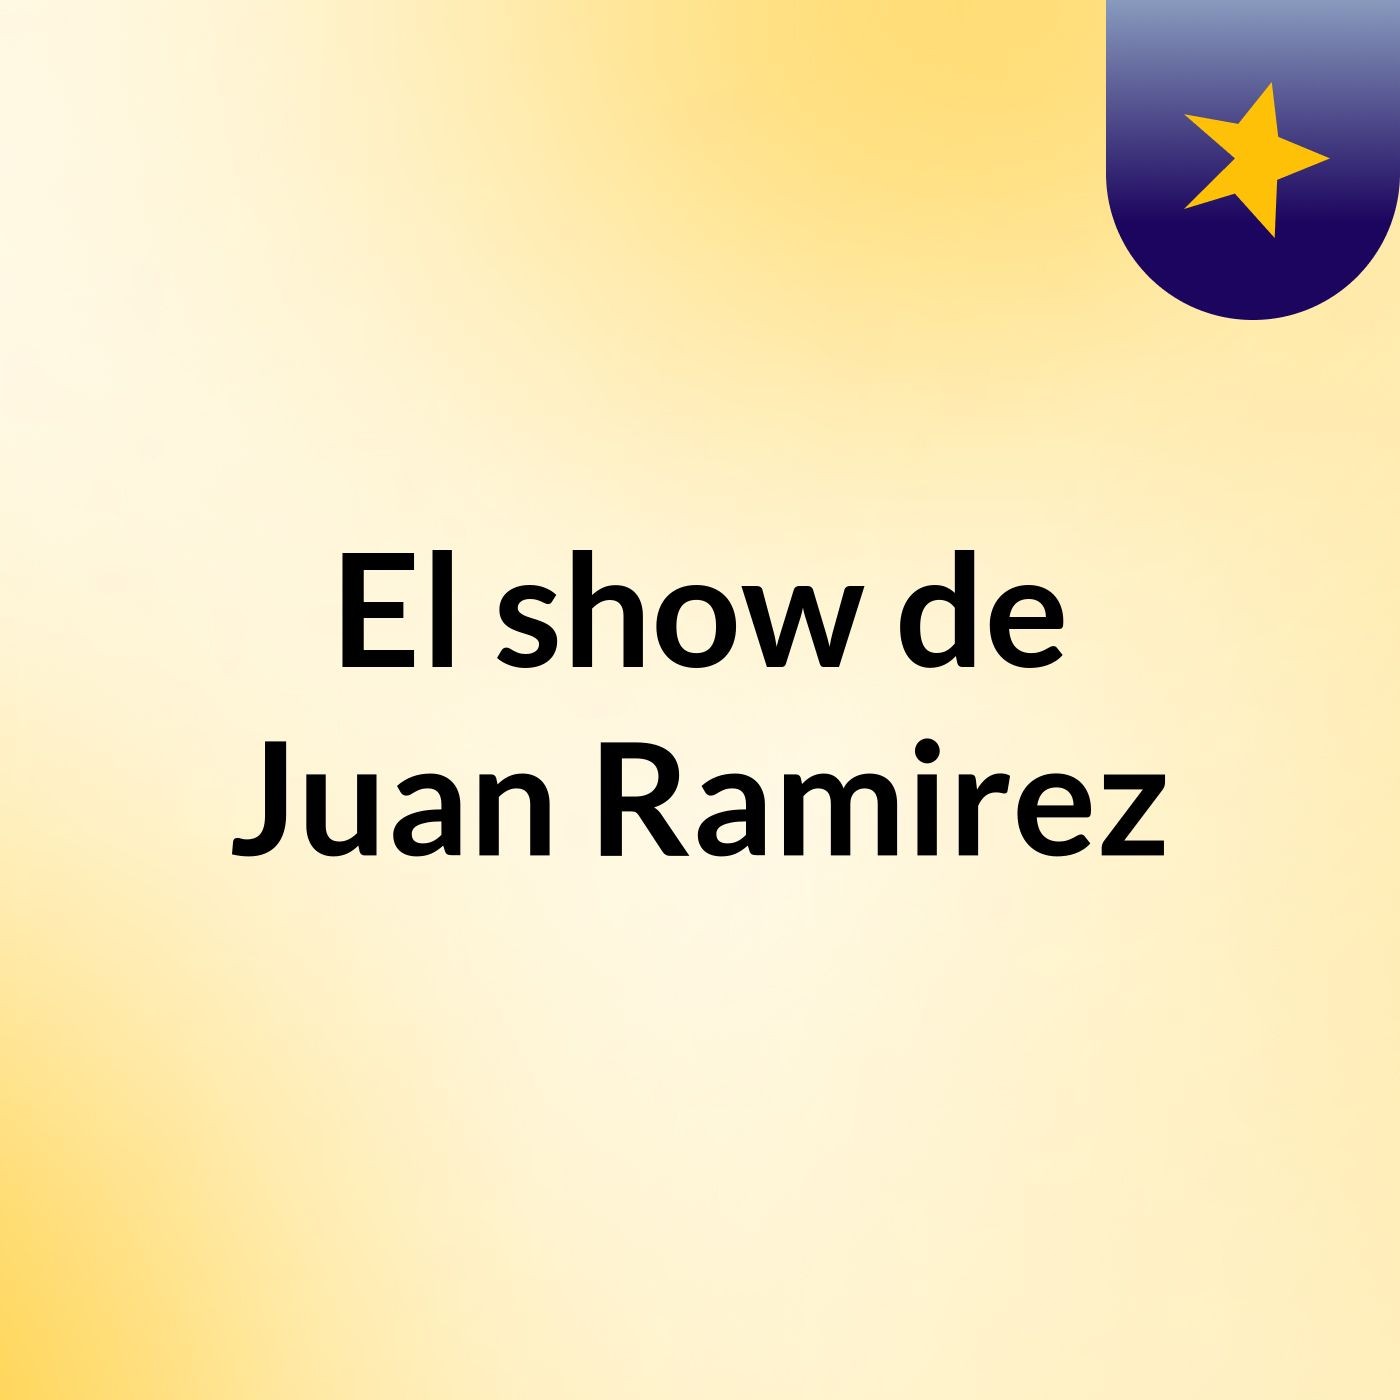 El show de Juan Ramirez